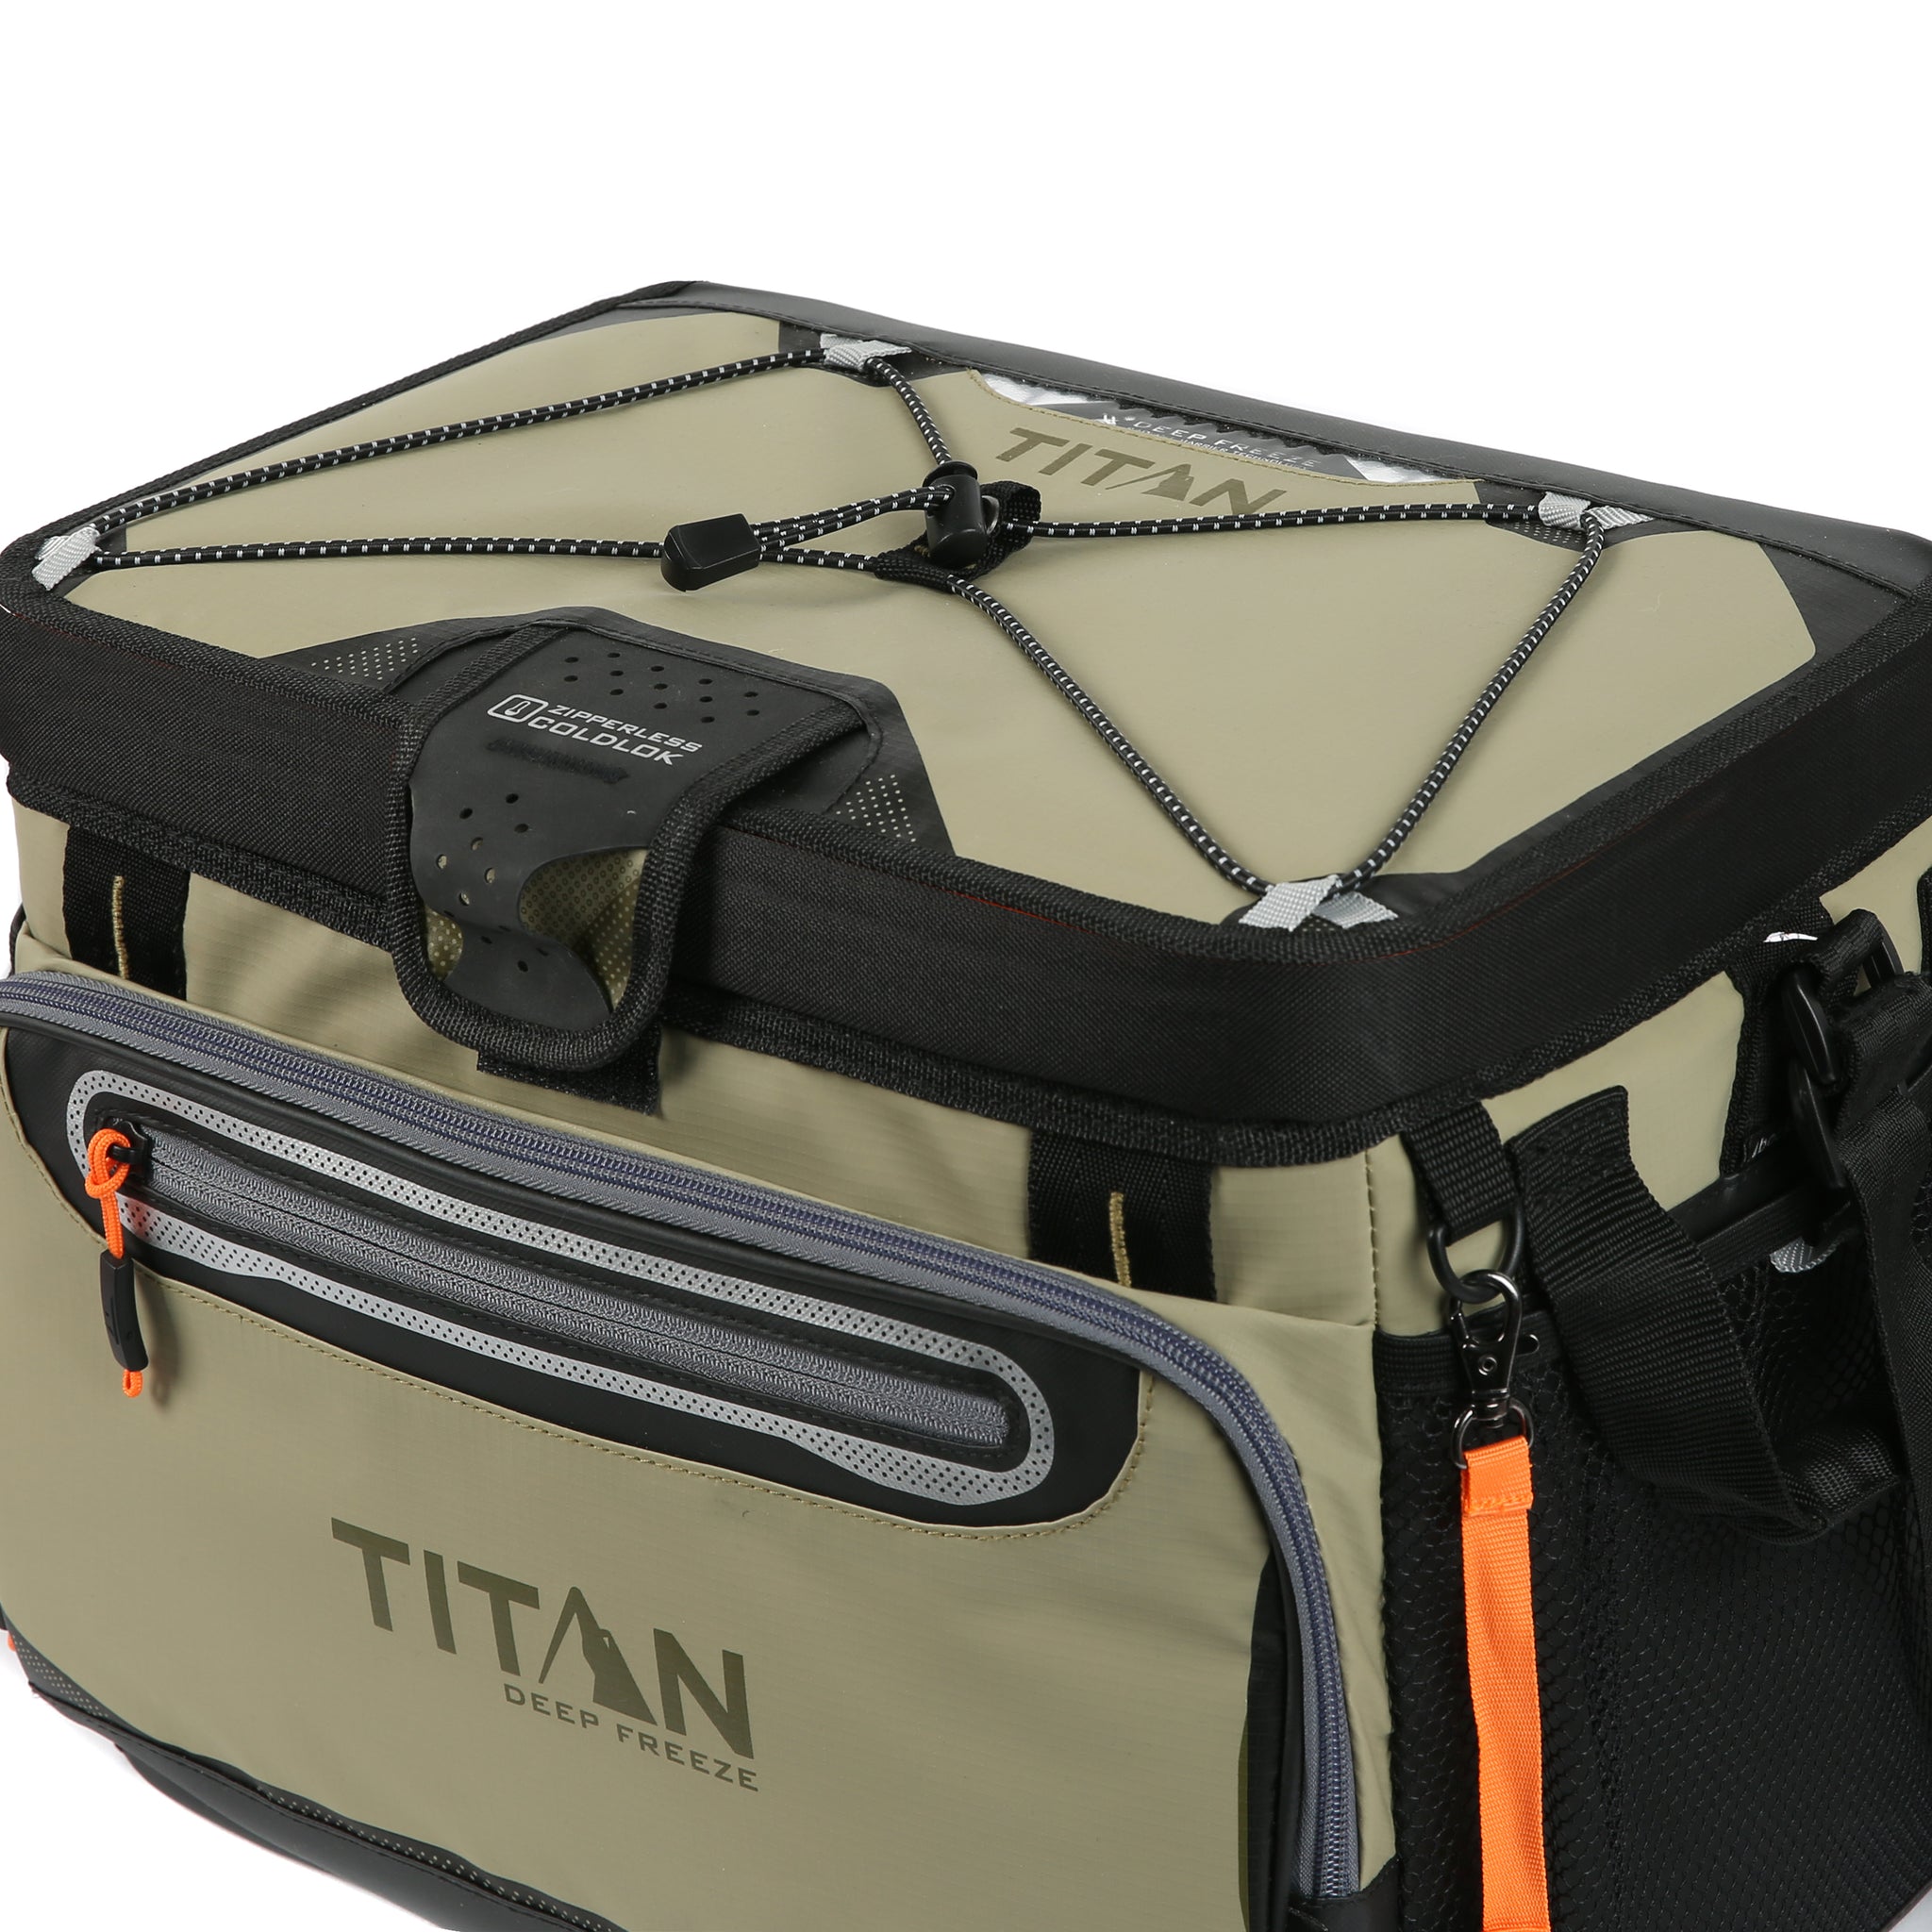 Titan Deep Freeze® Zipperless - 30 Can Cooler